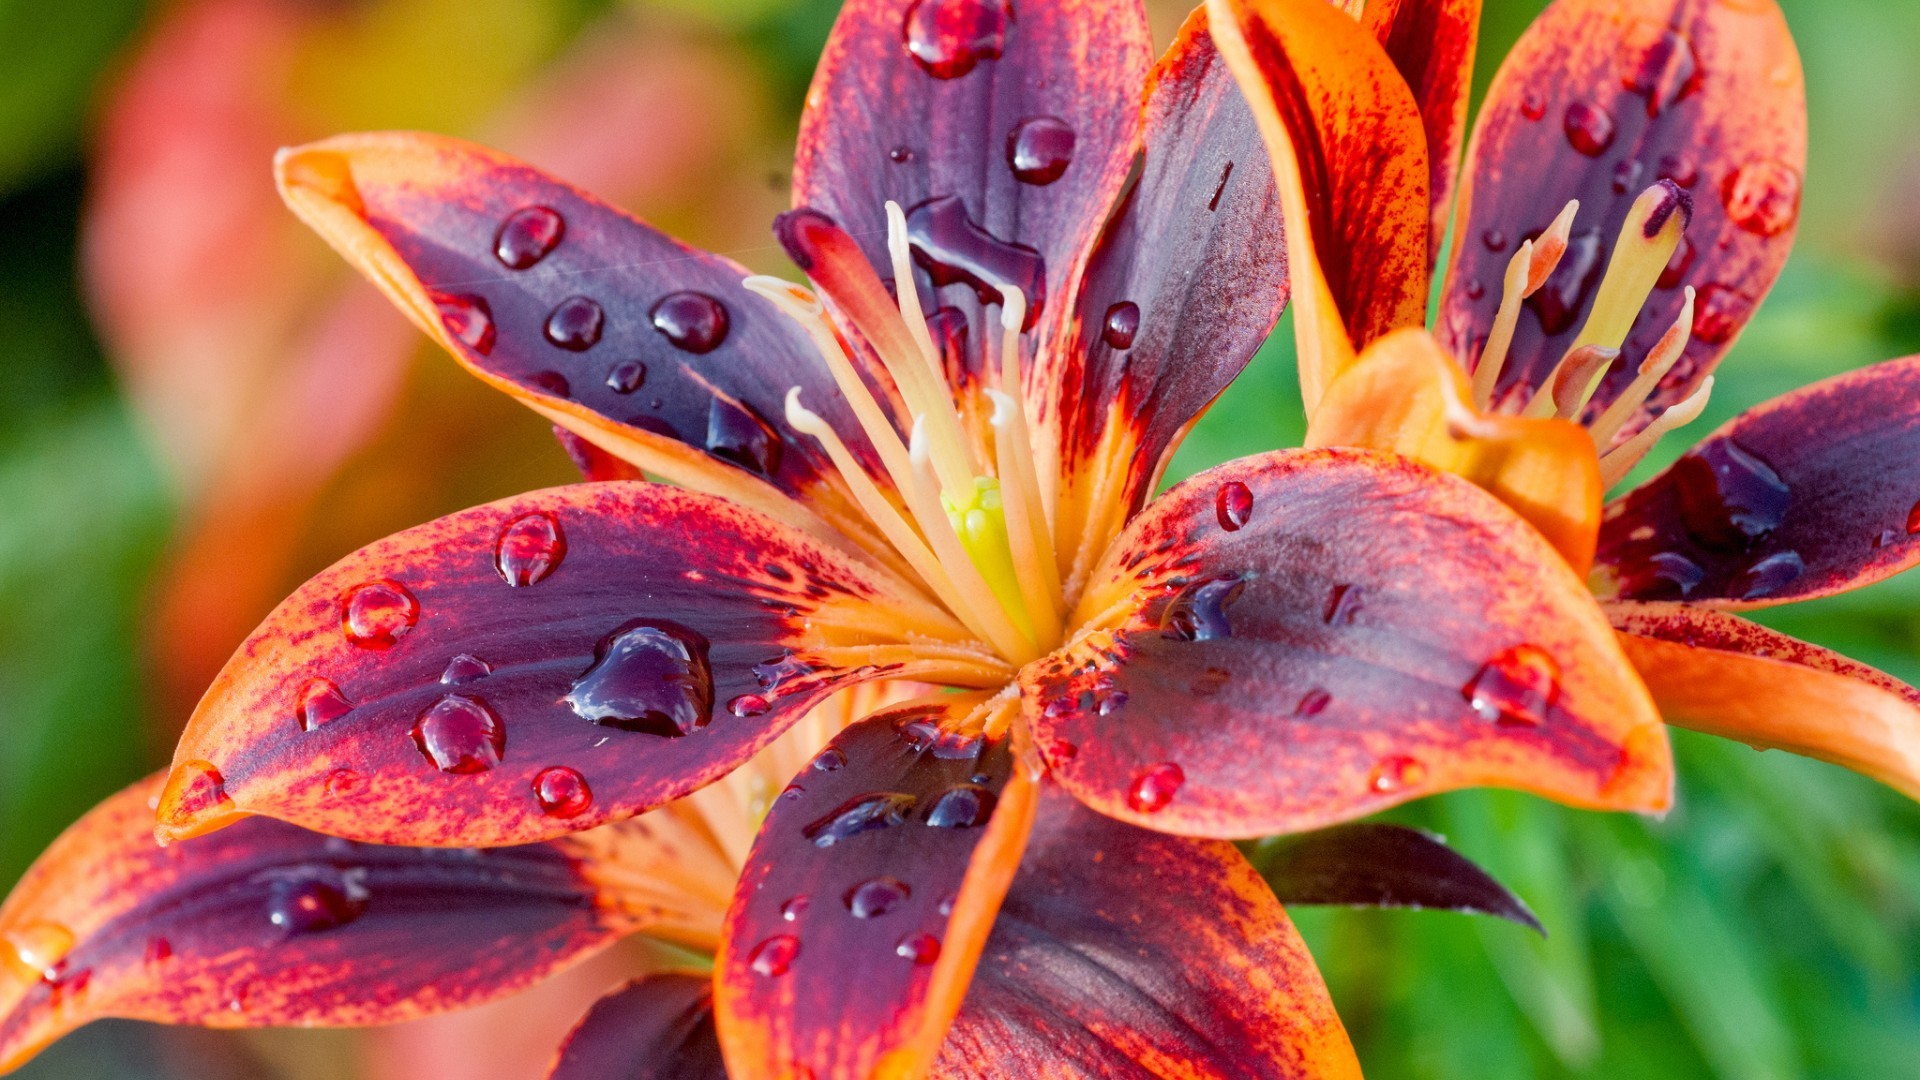 VERY HI-RES PHOTO WALLPAPER! After-the-rain-water-drops-bloom-purple-orange-lily-flowers-macro.jpg  (1920Ã1080) | Macro Photography | Pinterest | Water drops …